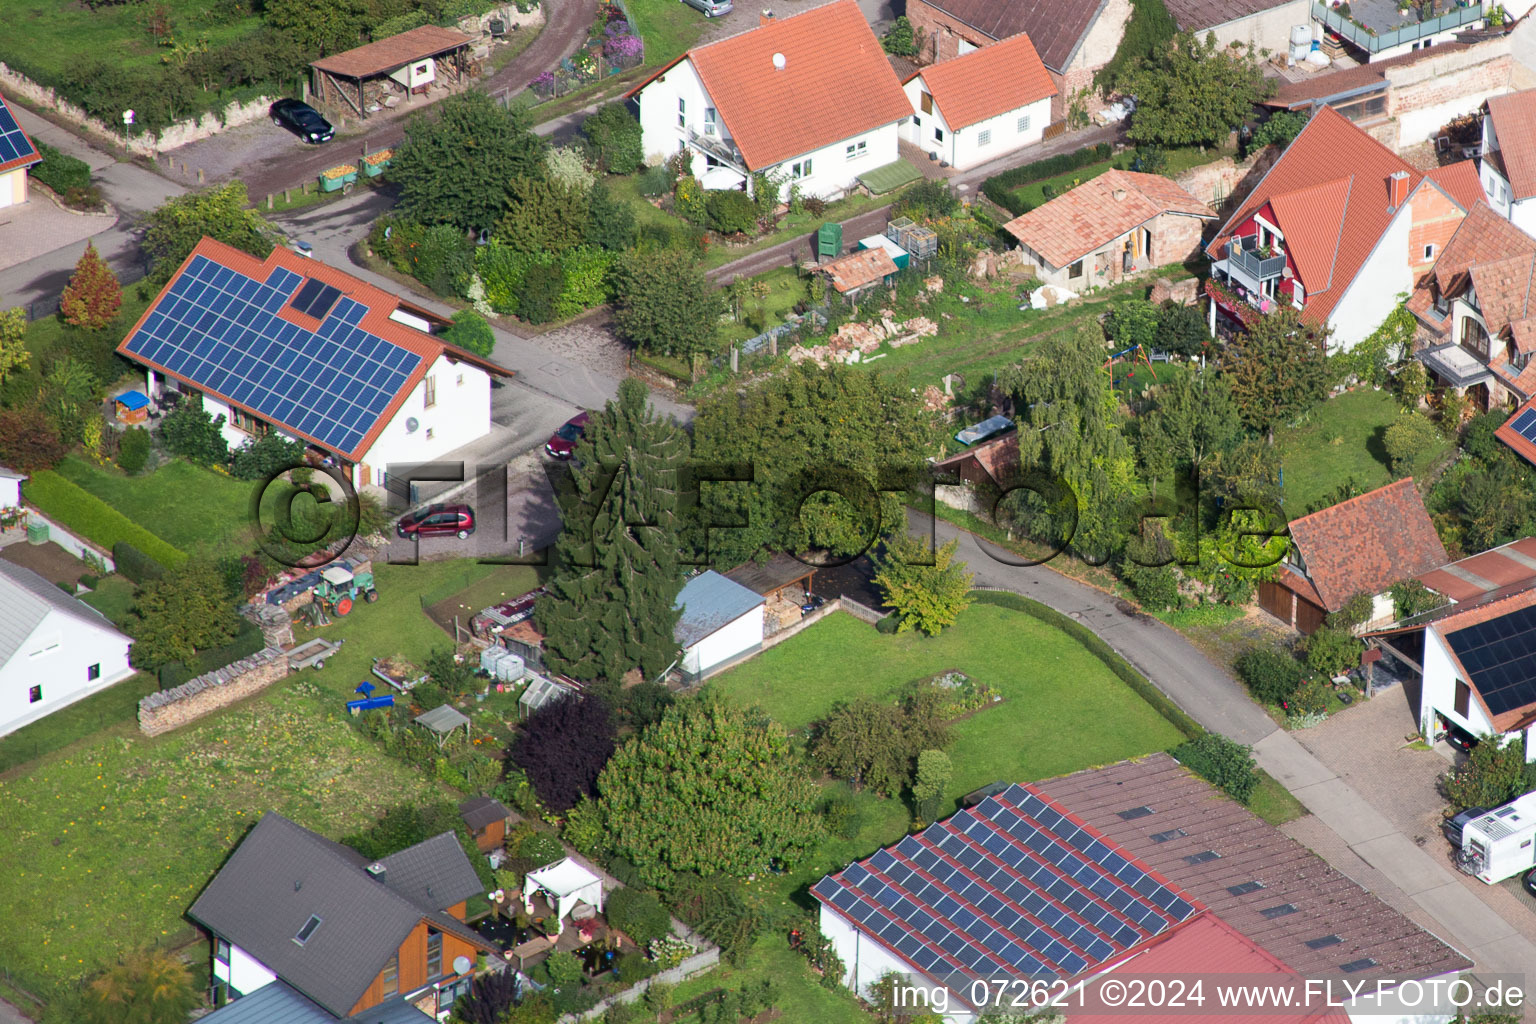 Aerial photograpy of Village view in the district Heuchelheim in Heuchelheim-Klingen in the state Rhineland-Palatinate